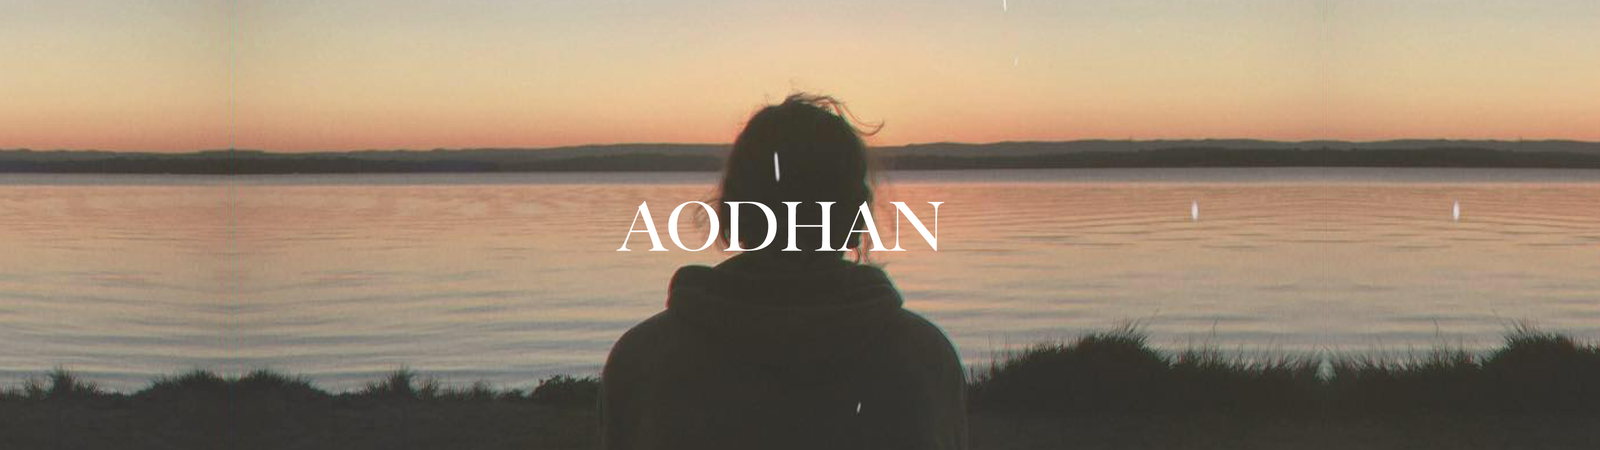 Aodhan